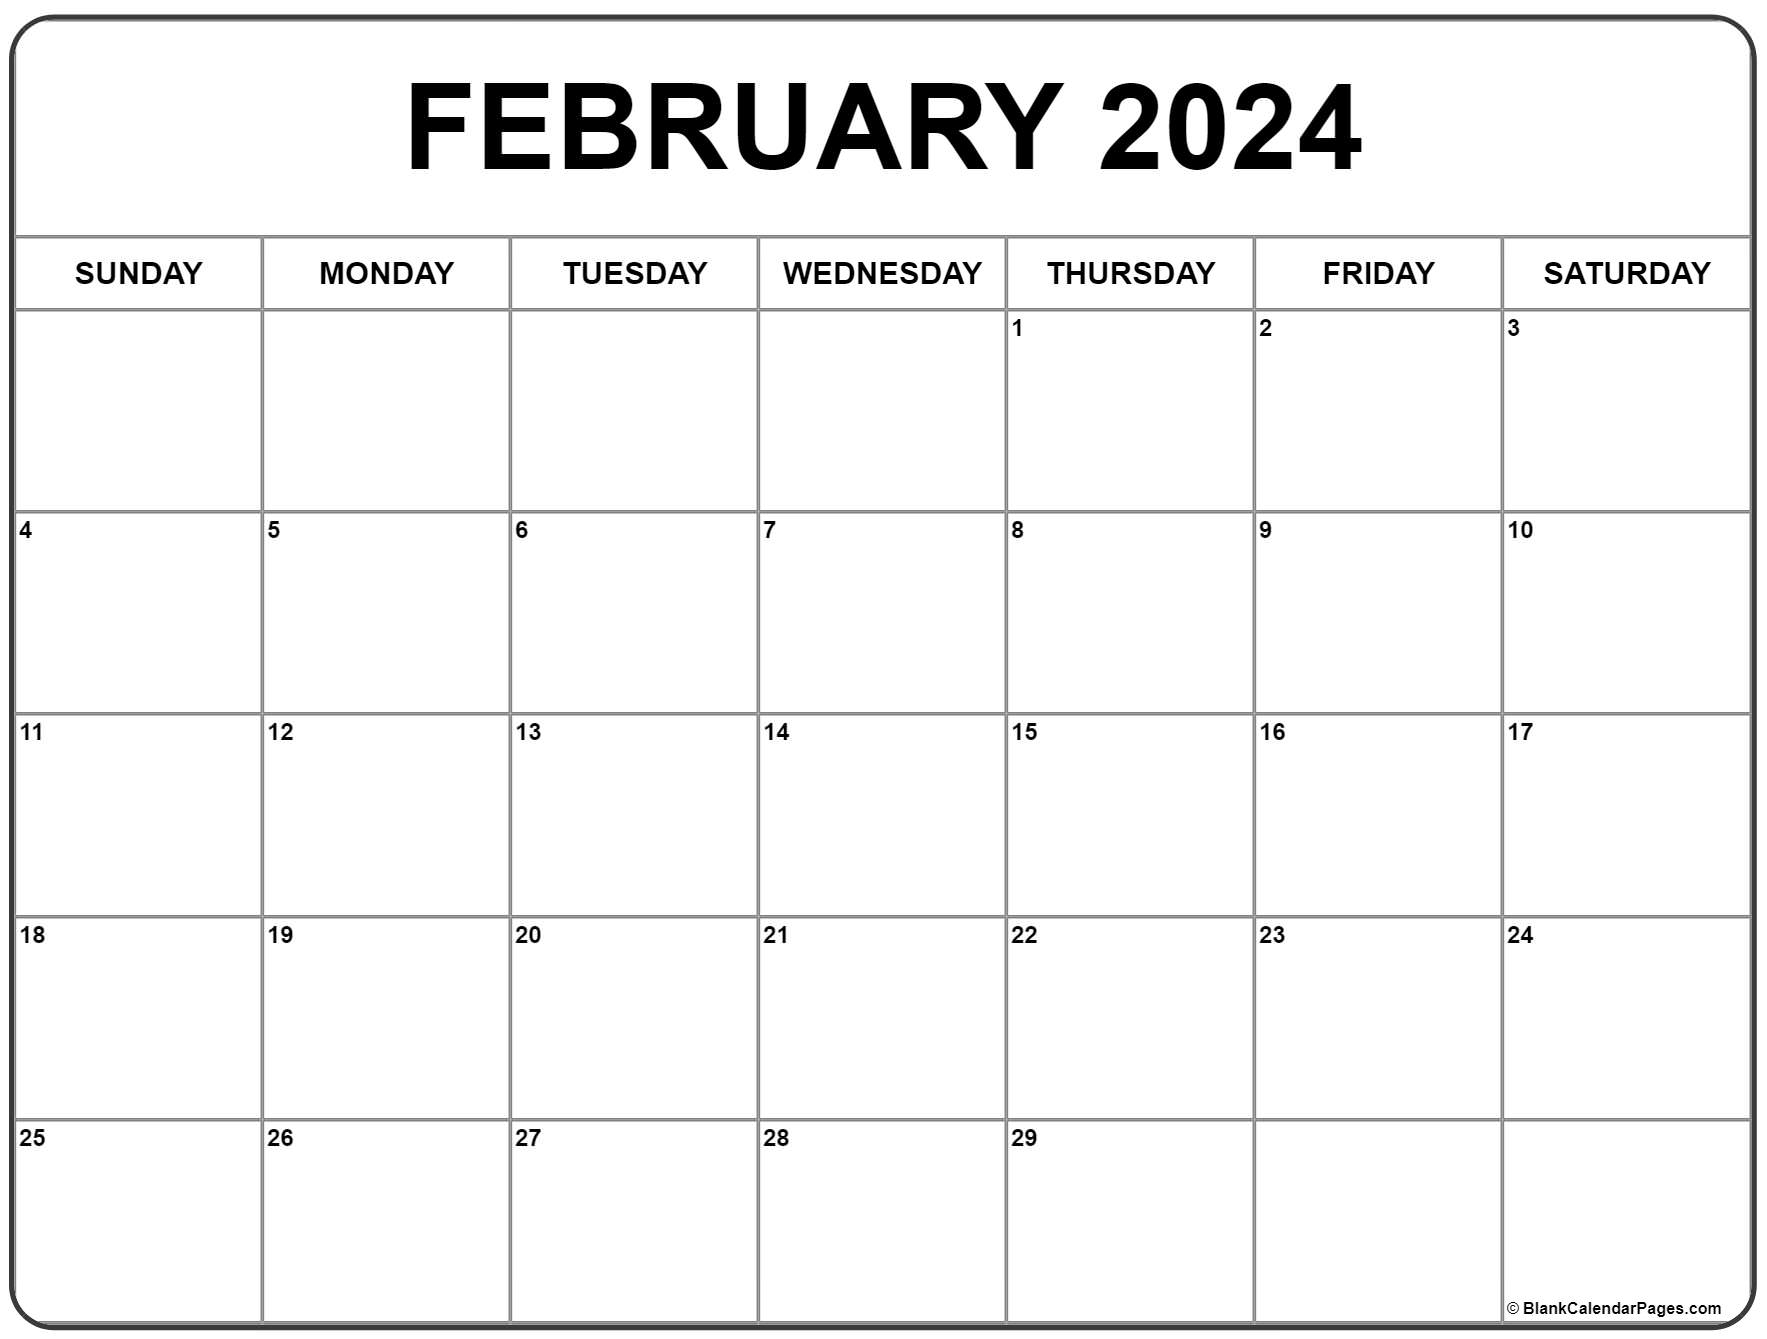 February 2024 Calendar | Free Printable Calendar for February 2024 Free Printable Calendar